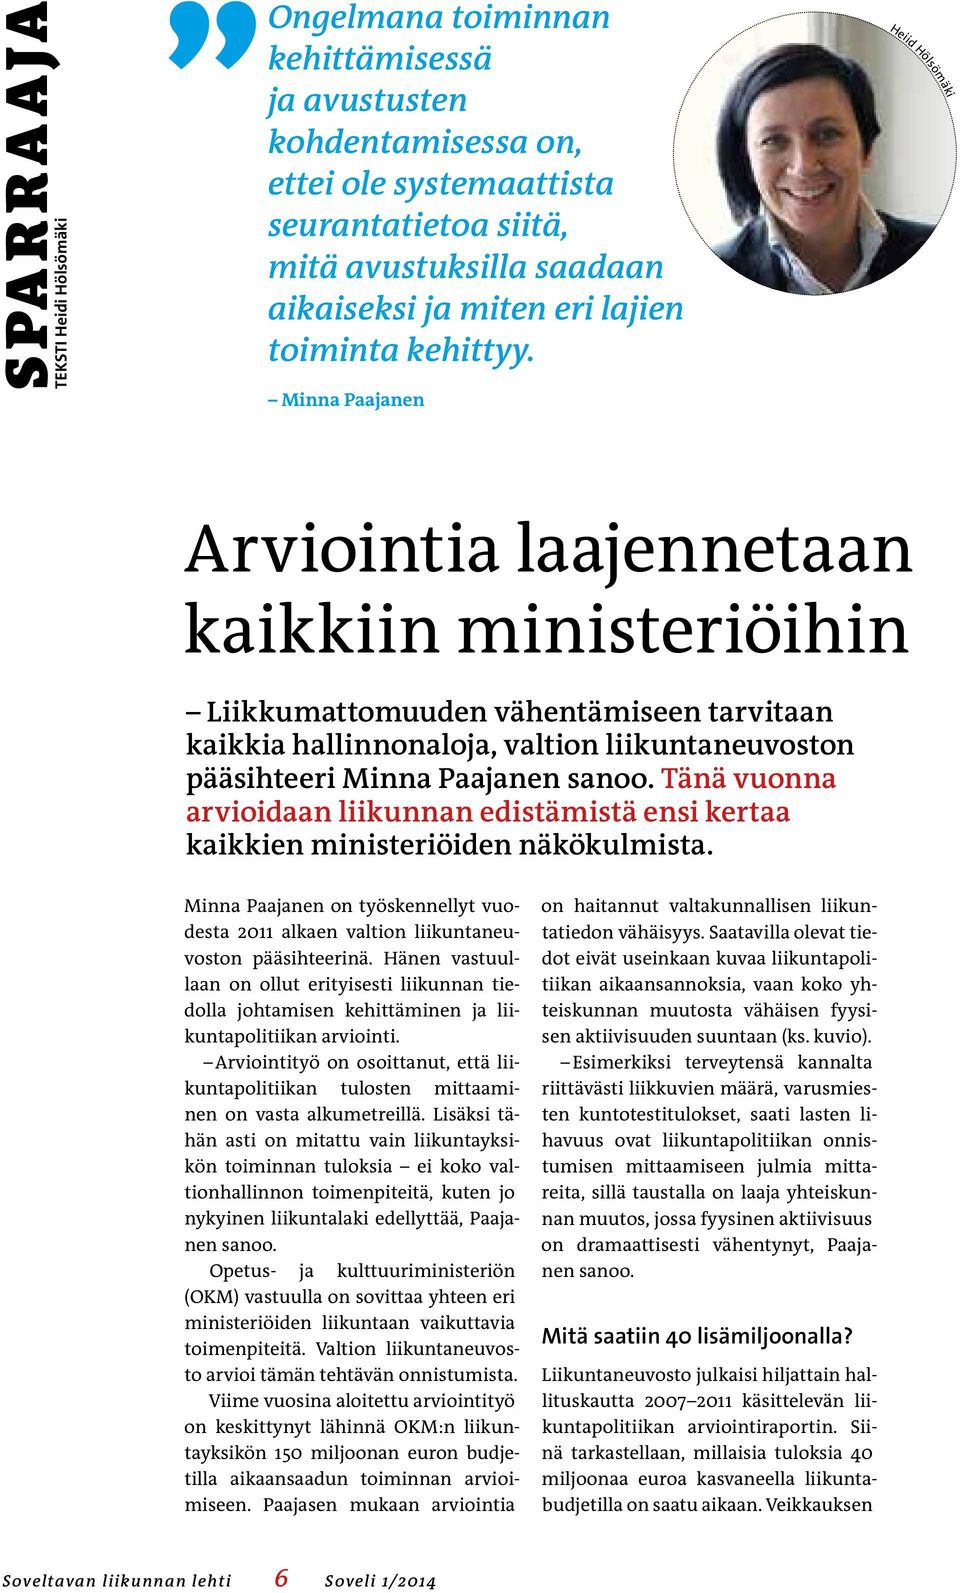 Minna Paajanen Heiid Hölsömäki Arviointia laajennetaan kaikkiin ministeriöihin Liikkumattomuuden vähentämiseen tarvitaan kaikkia hallinnonaloja, valtion liikuntaneuvoston pääsihteeri Minna Paajanen